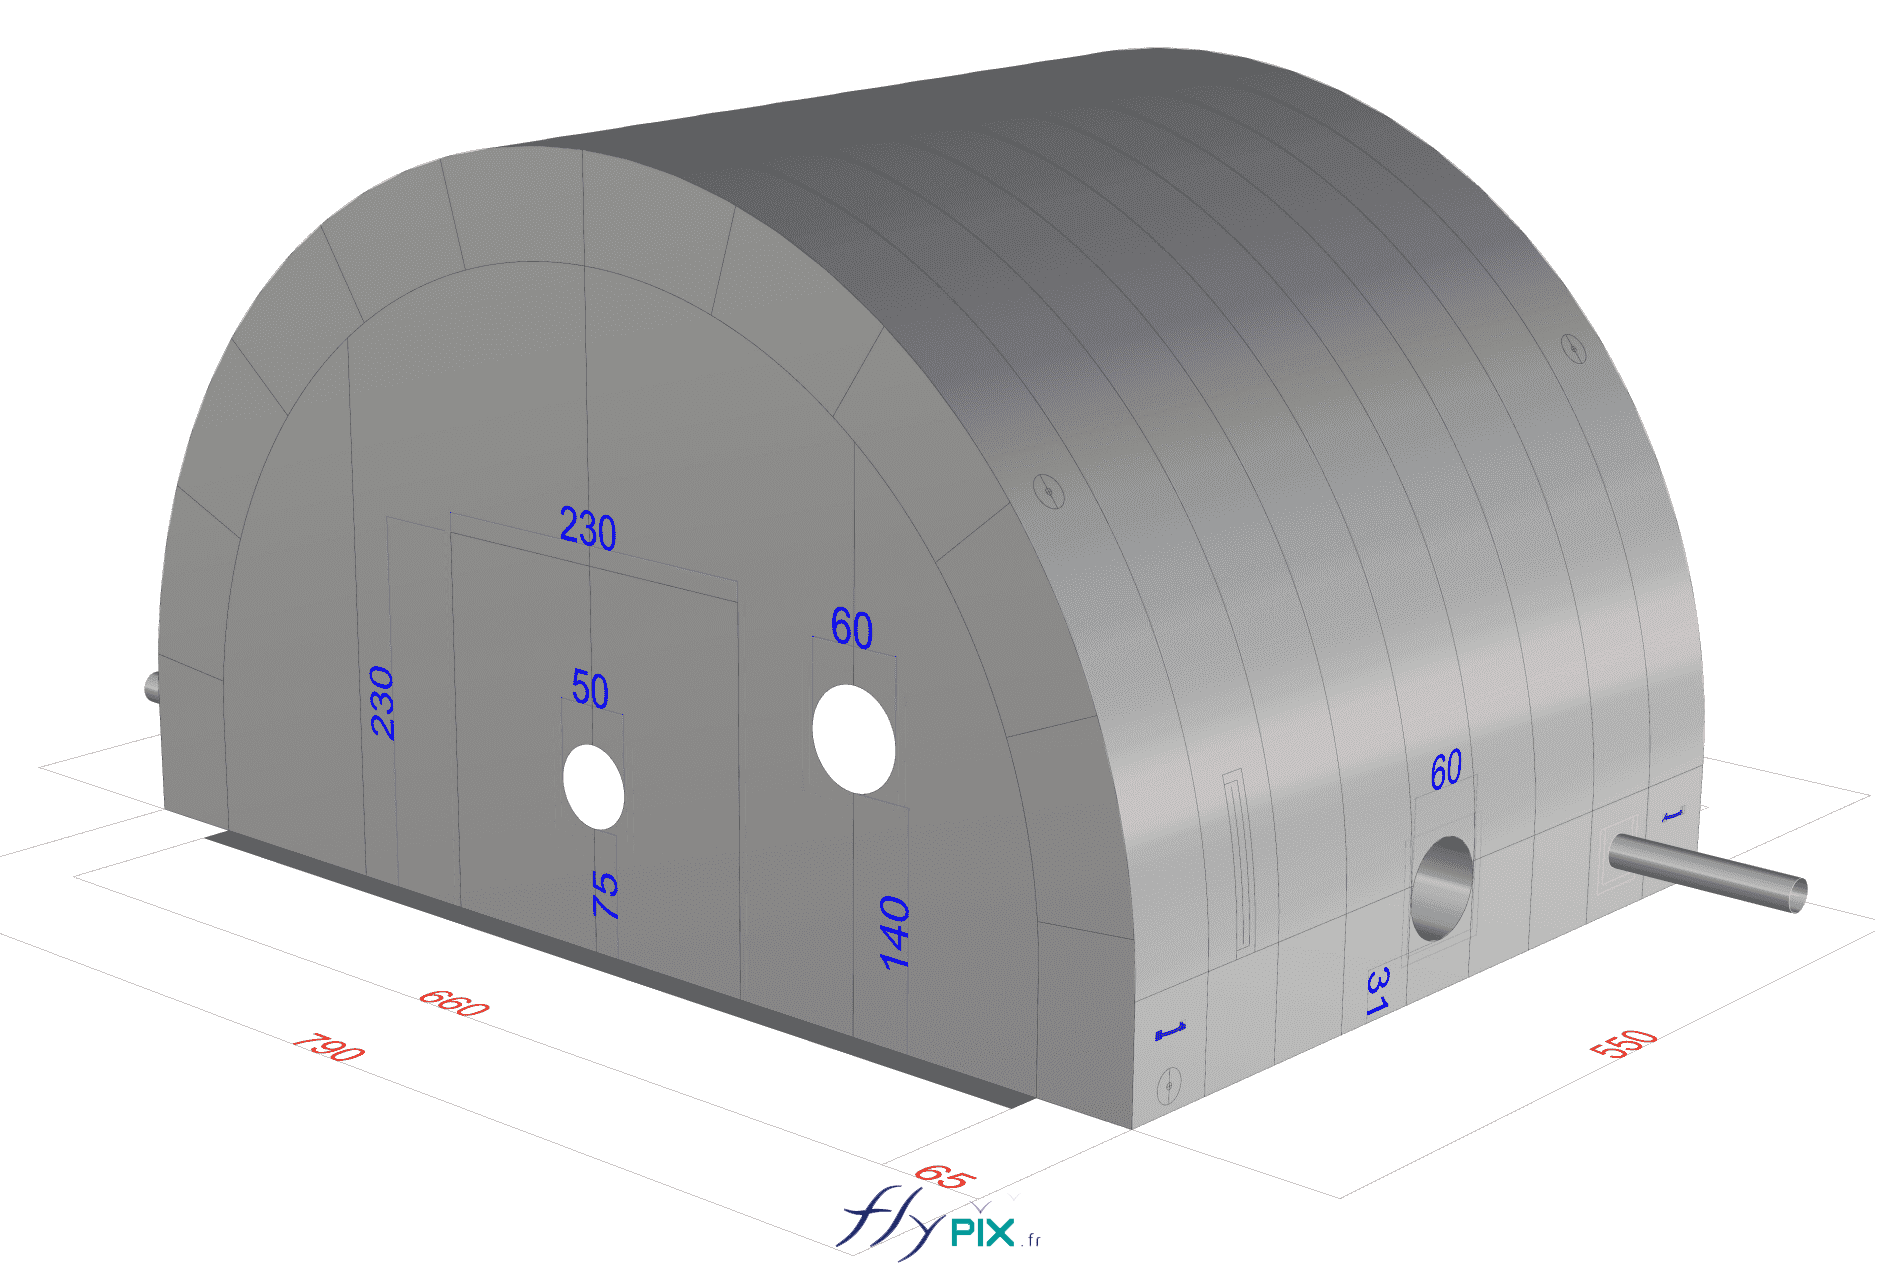 BAT (bon à tirer), modélisation 3D : Hydro Exploitation, en Suisse : fabrication sur mesure d'une tente gonflable industrielle.